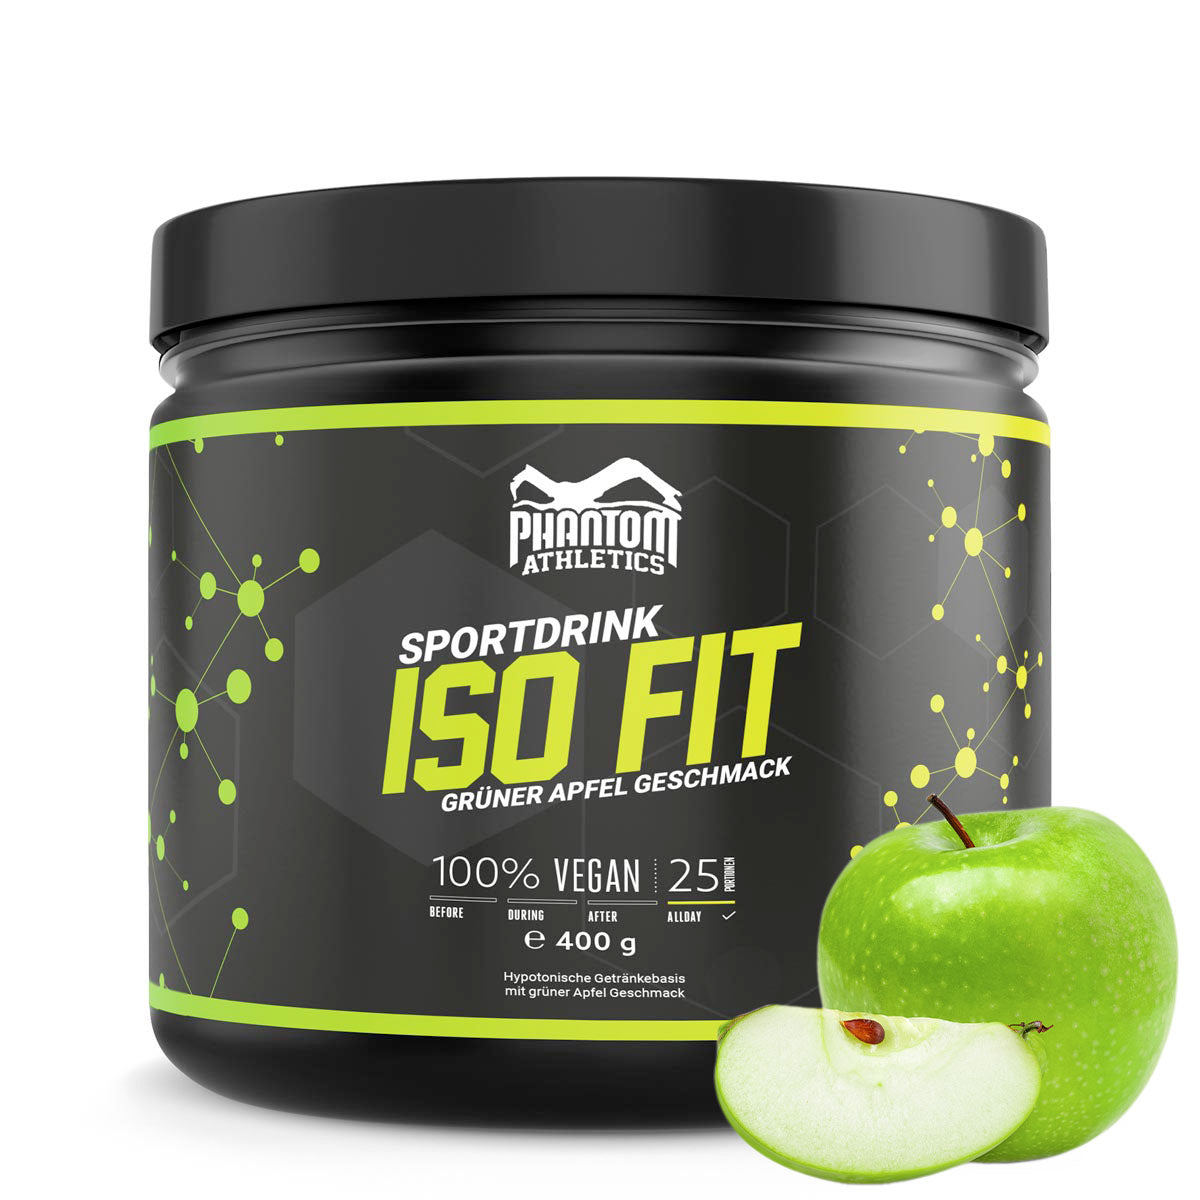 Phantom ISO FIT näringstillskott ger dig allt du behöver för kampsportsträning. Nu med en härlig smak av grönt äpple.